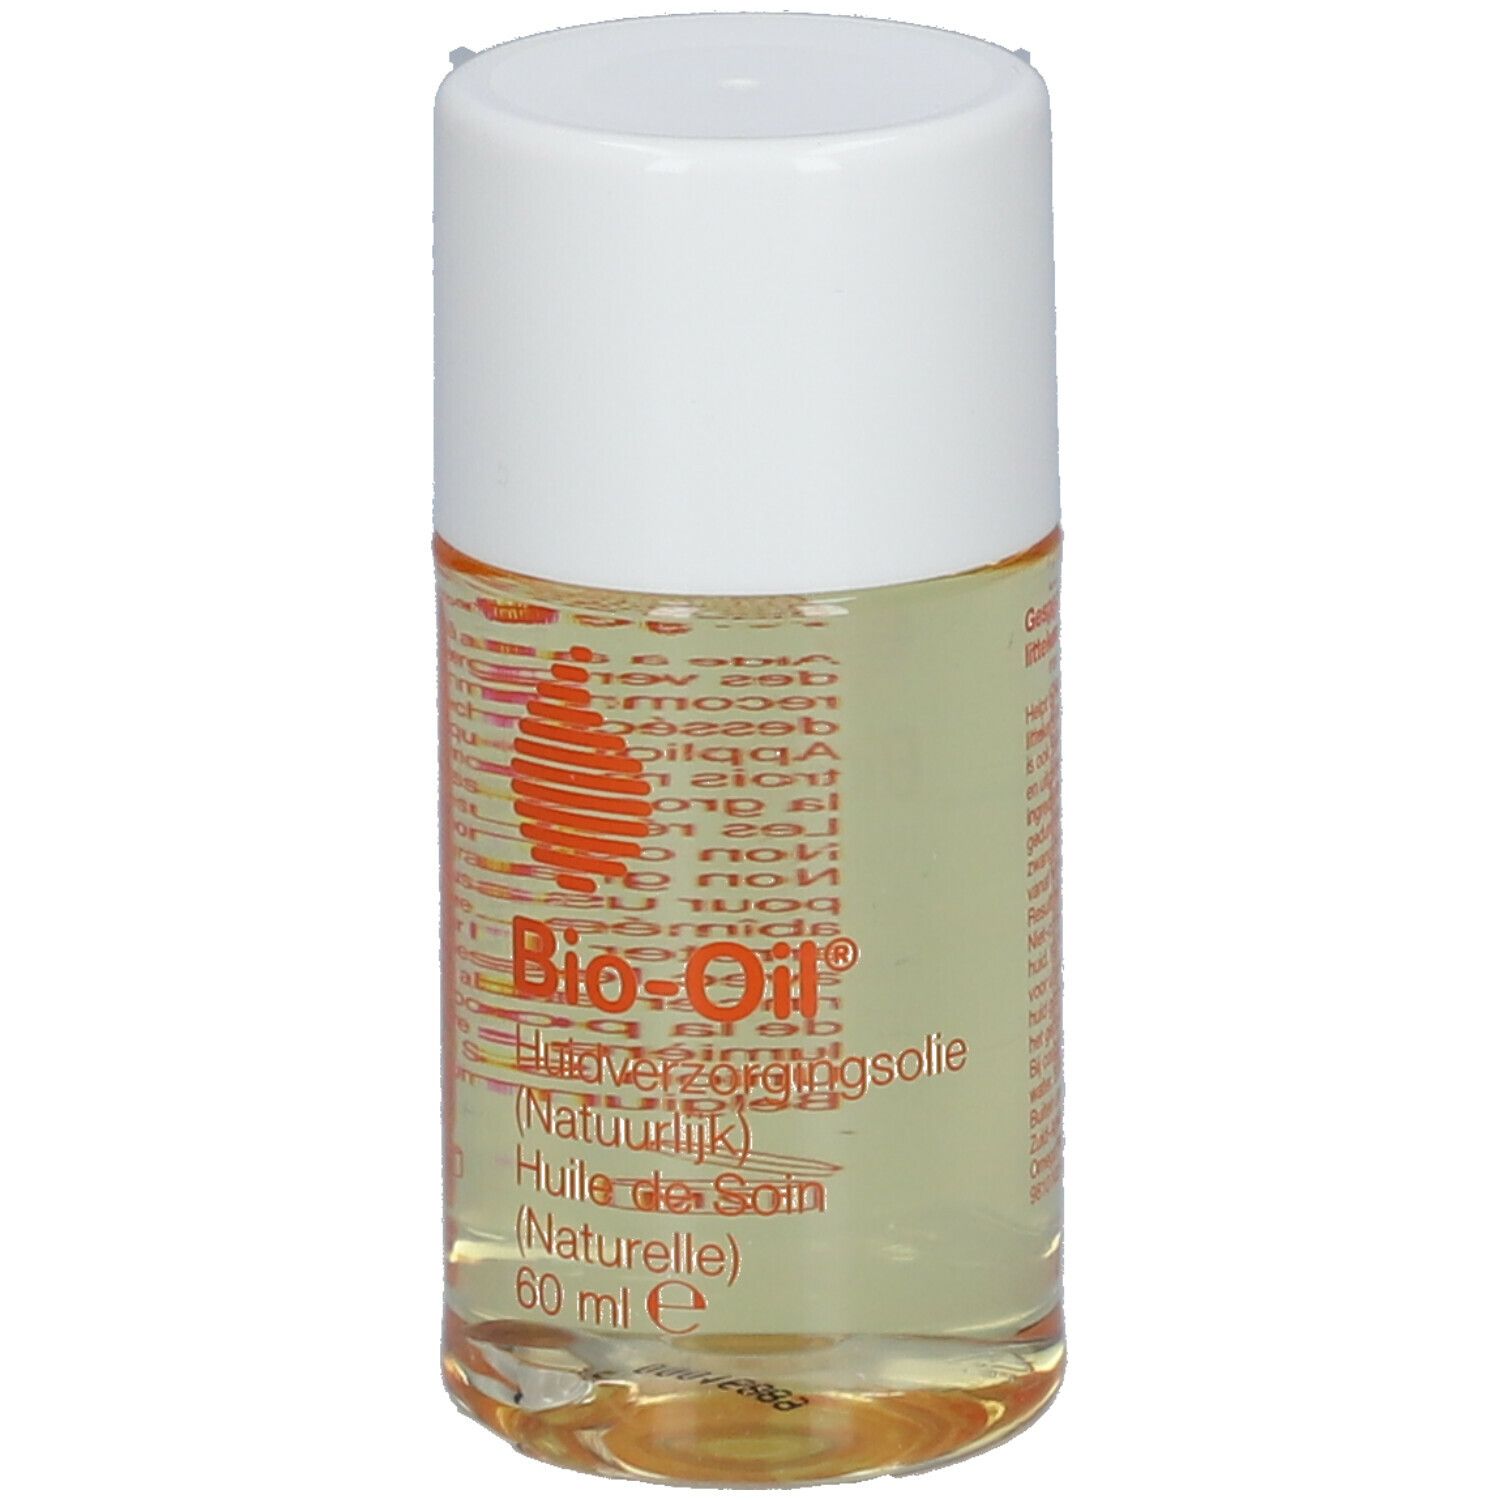 Bio-Oil® Regenerations-Öl für Narben und Dehnungsstreifen